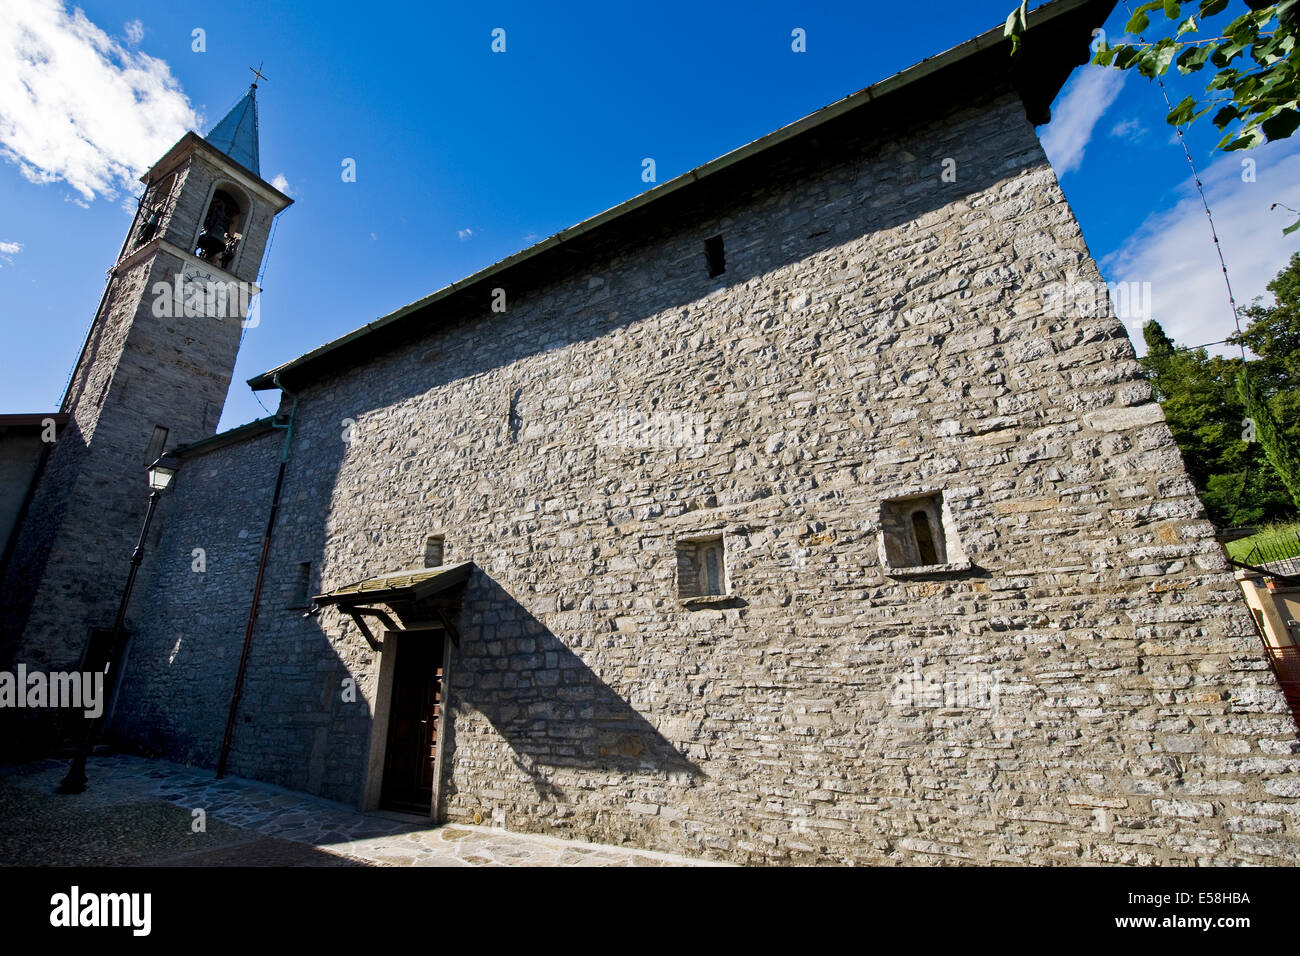 Italy, Lombardy, Sant'Antonio church Stock Photo